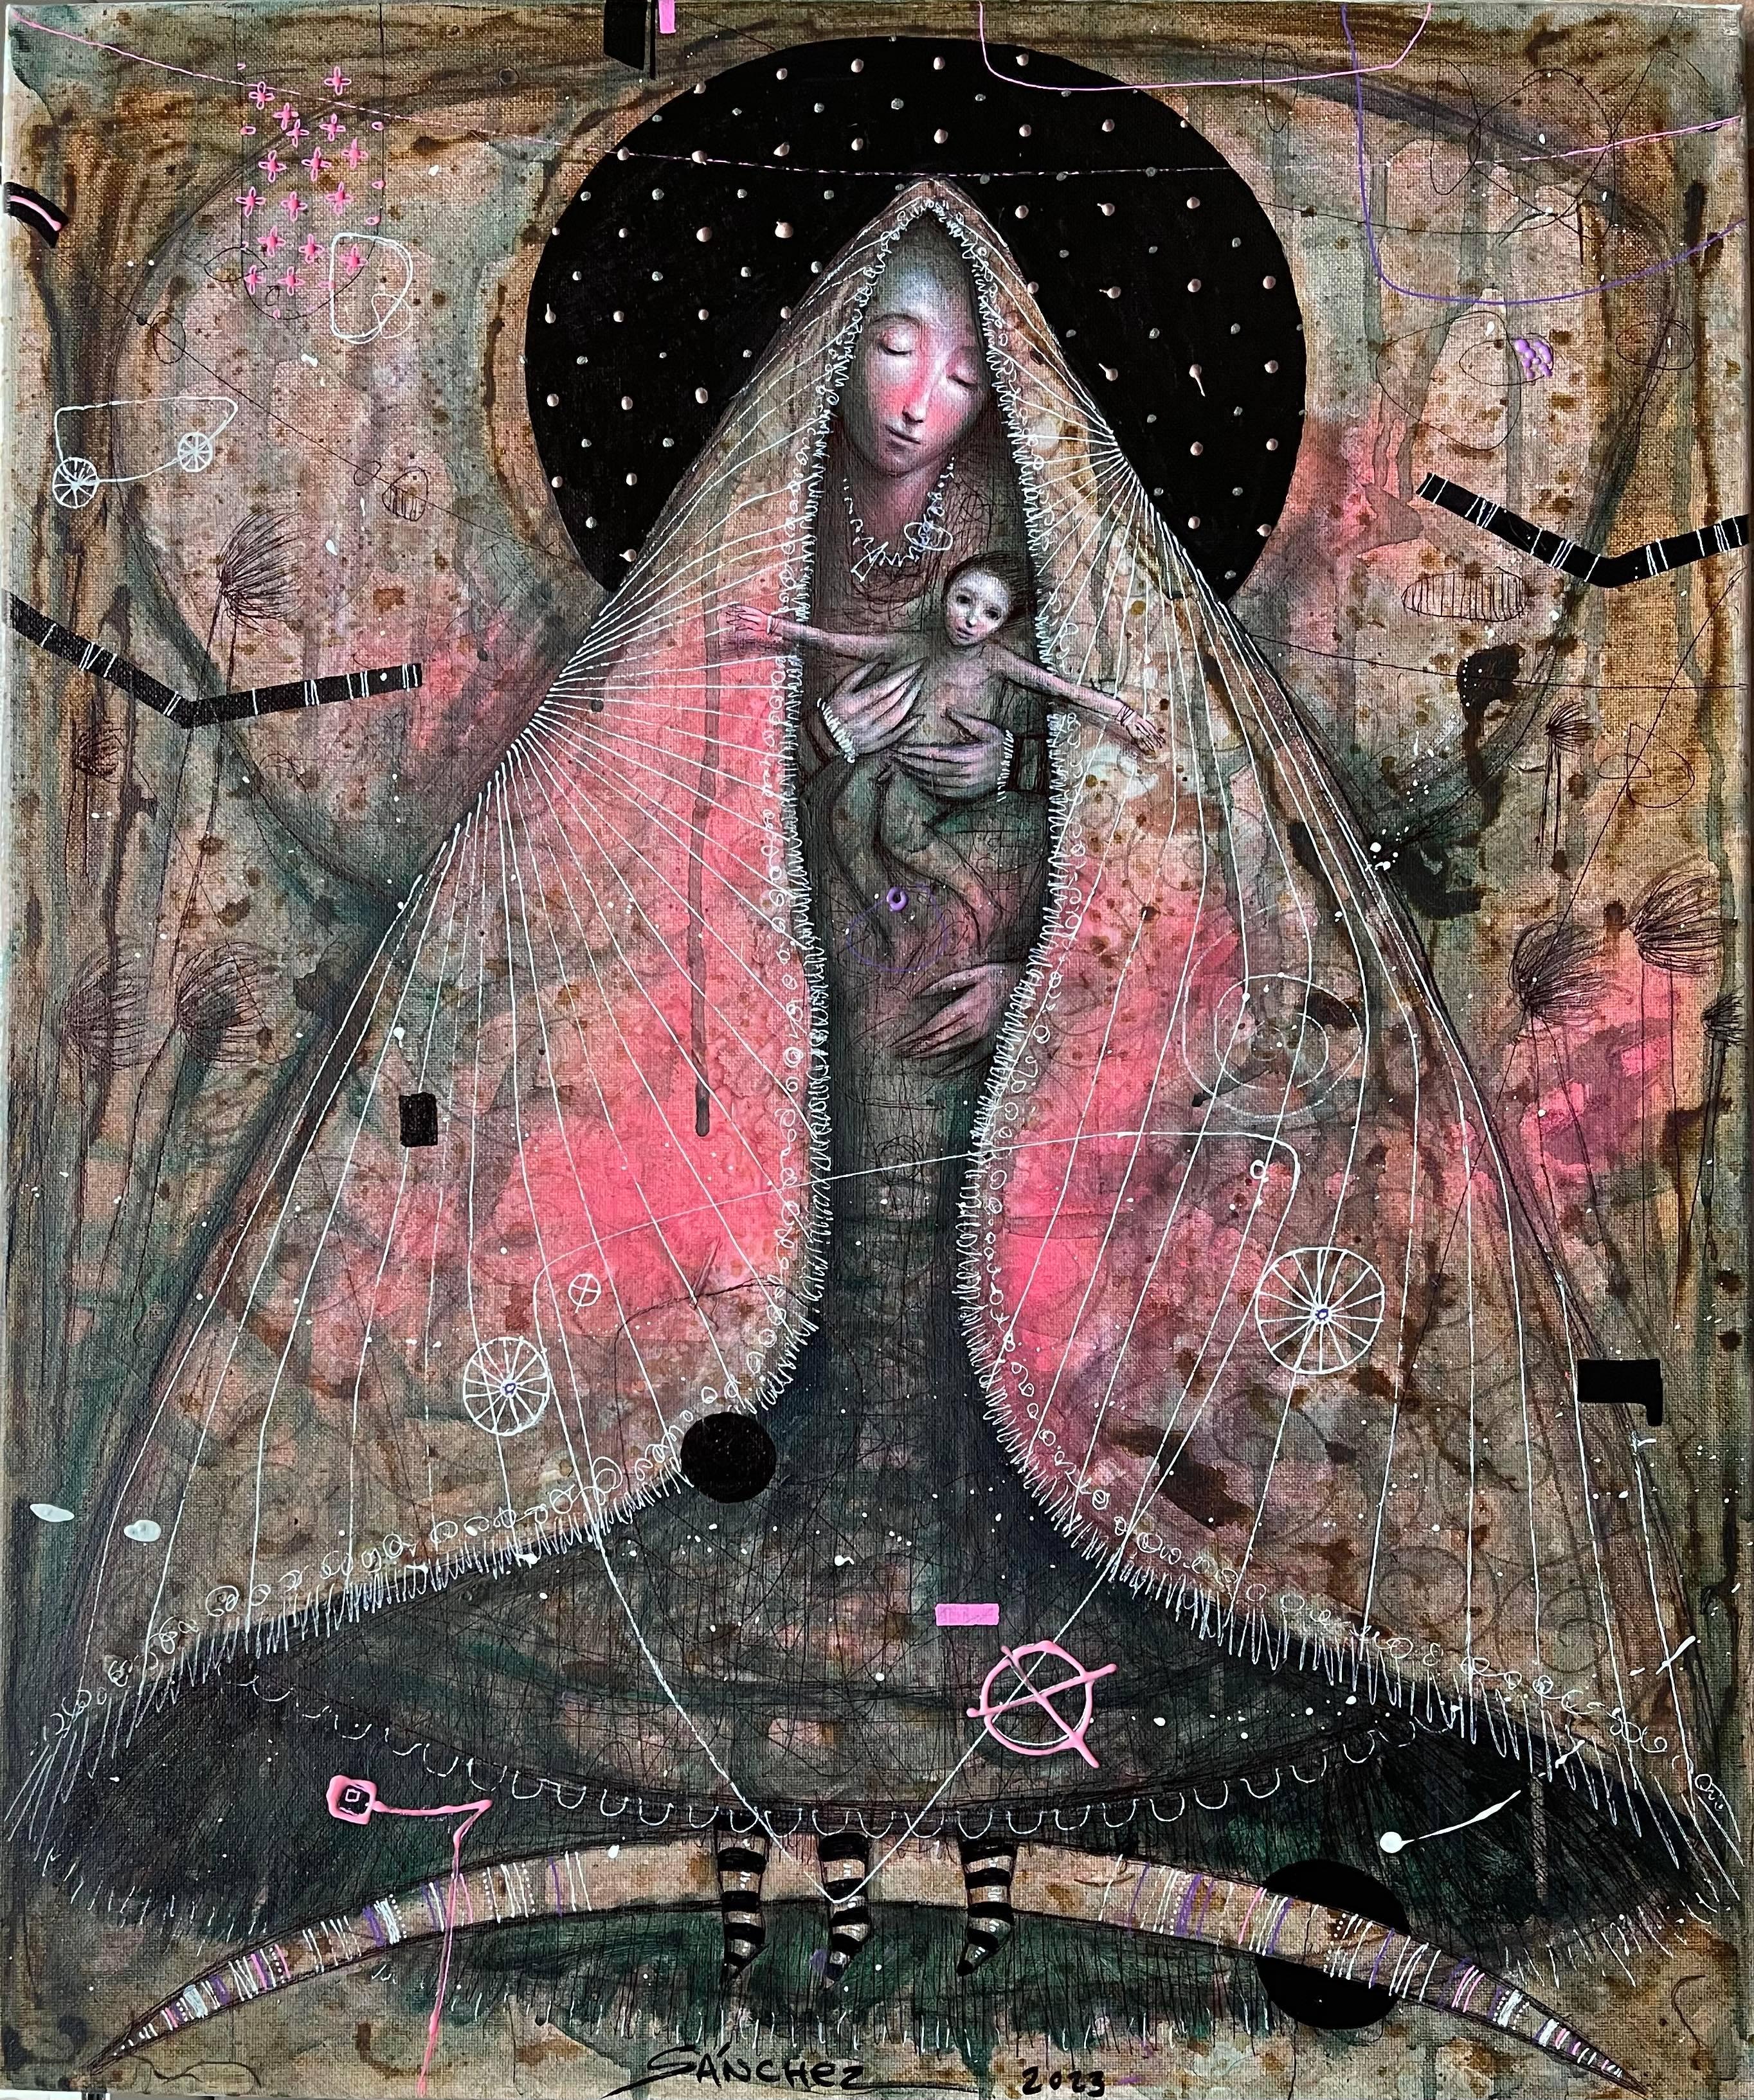 The Virgen & die mechanische Creed, Öl, Mixed Media, Hyperrealismus,  Kubanische Kunst,  – Mixed Media Art von Brian Sanchez